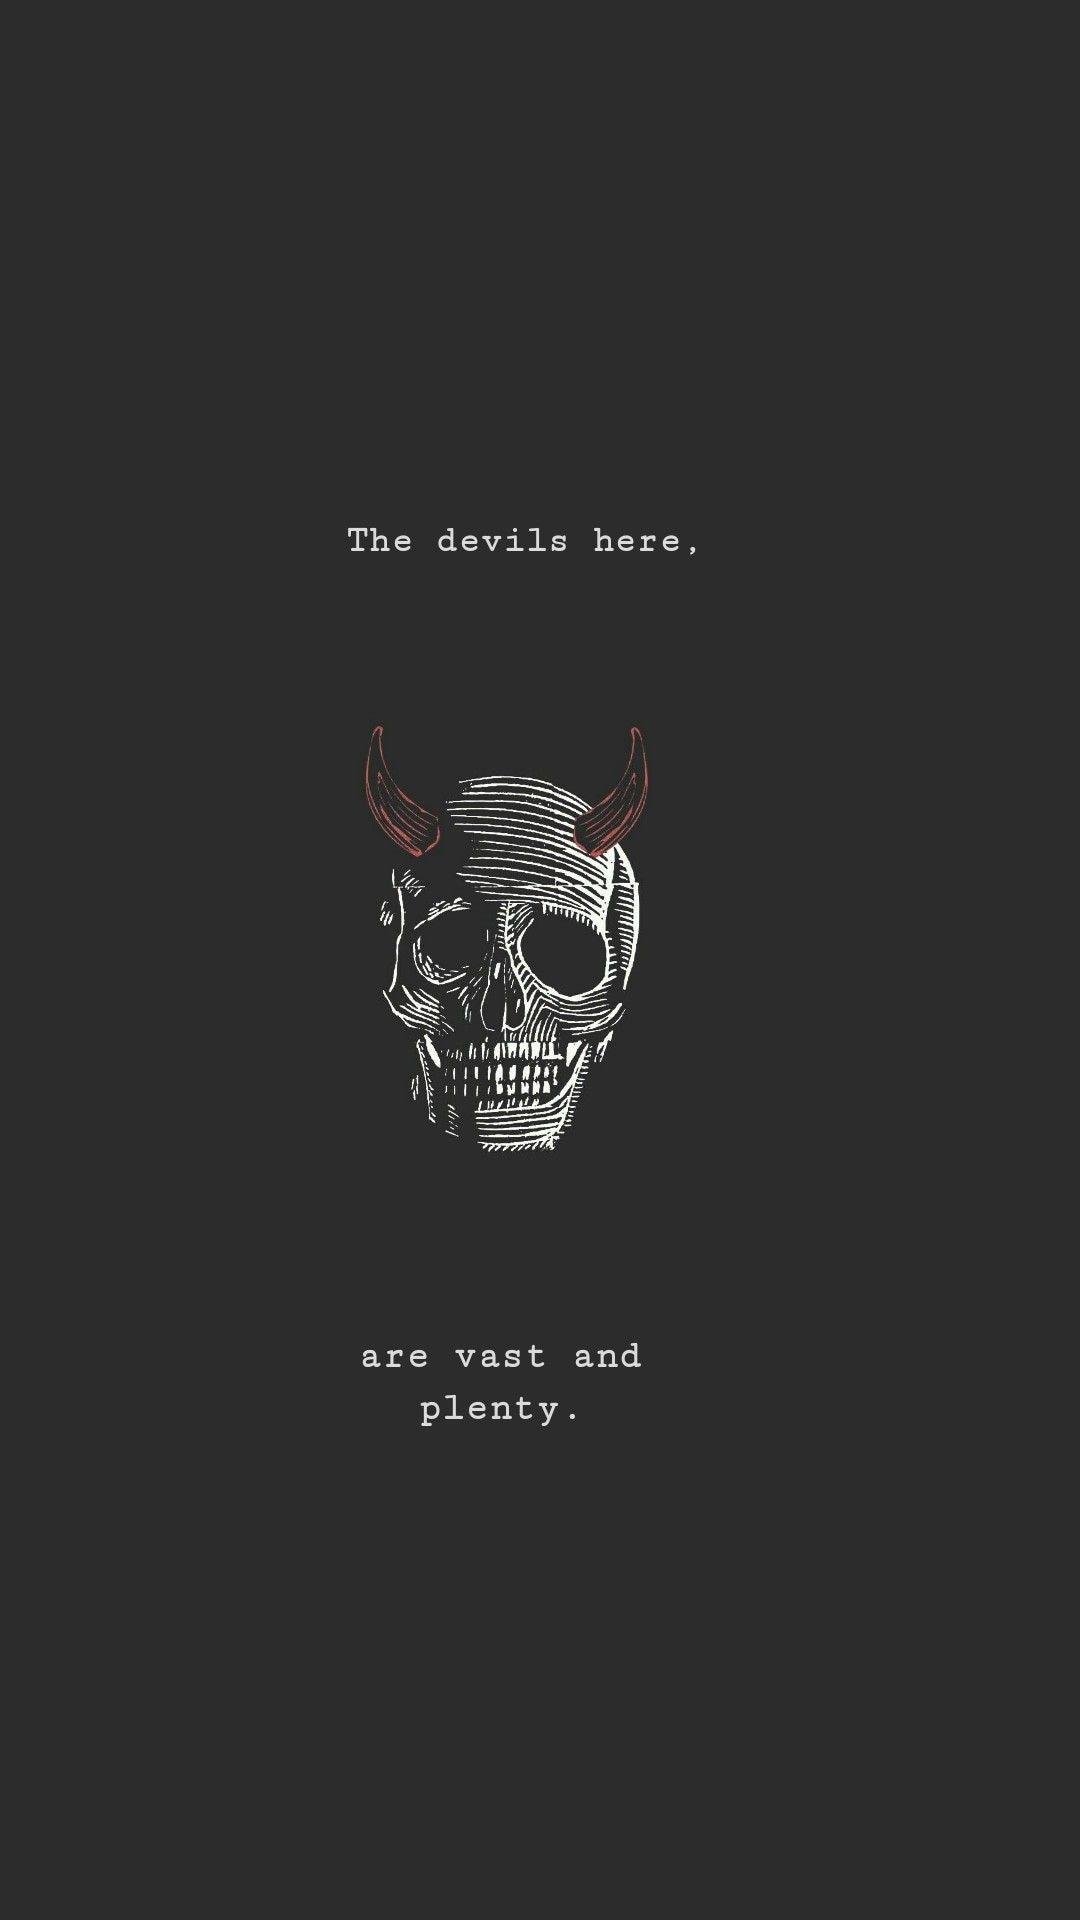 Devil's eye (Wallpaper) by Hardii on DeviantArt